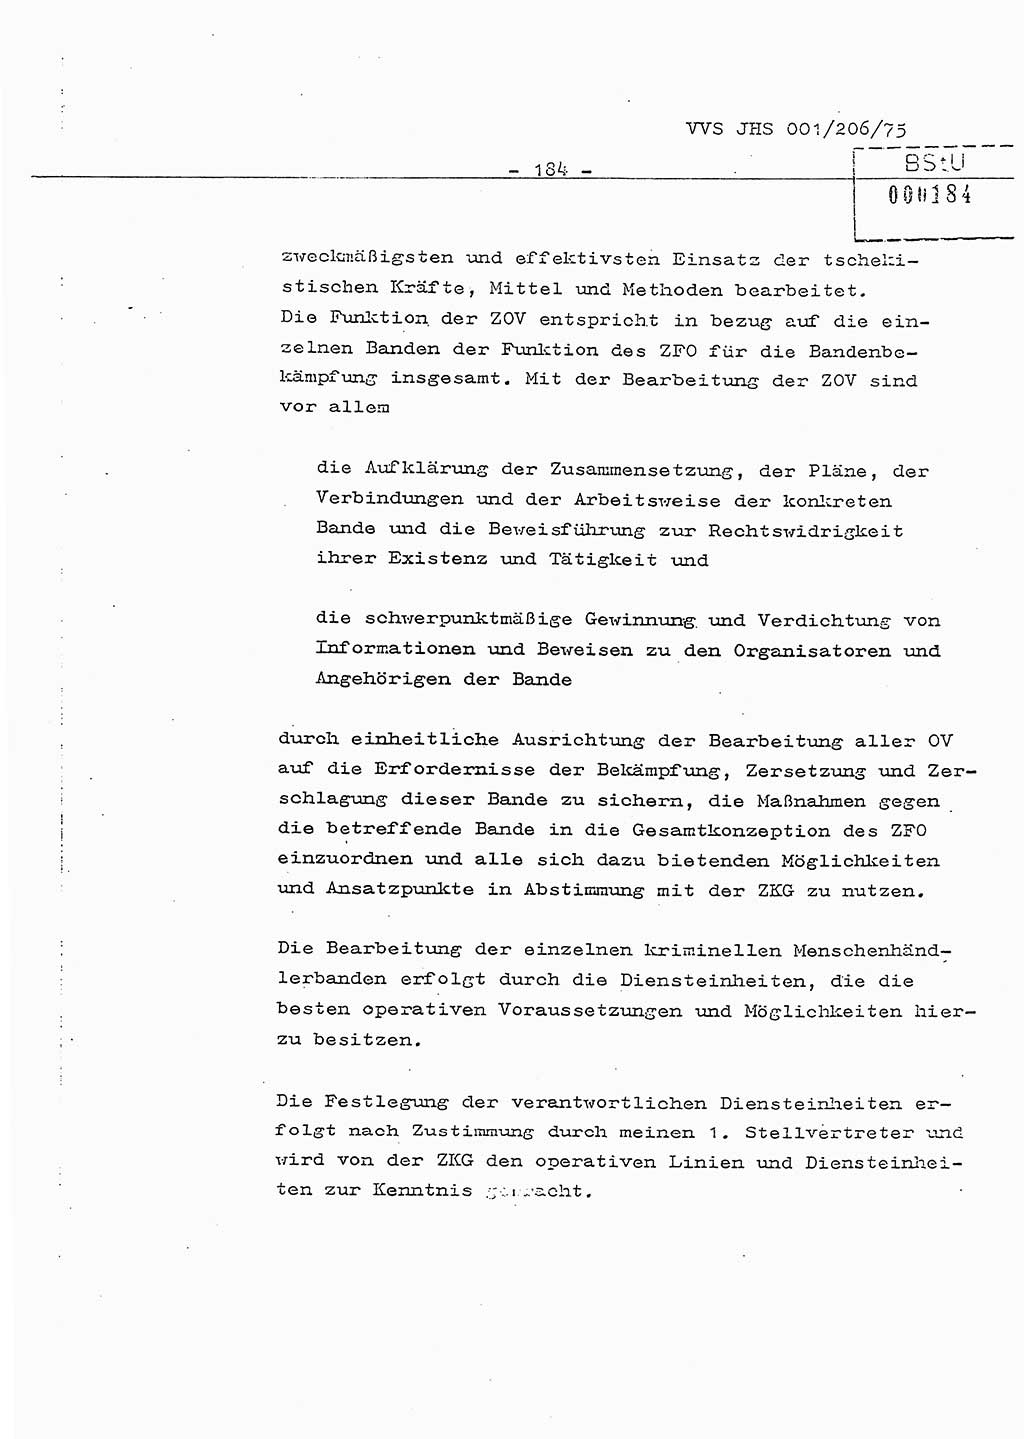 Dissertation Generalmajor Manfred Hummitzsch (Leiter der BV Leipzig), Generalmajor Heinz Fiedler (HA Ⅵ), Oberst Rolf Fister (HA Ⅸ), Ministerium für Staatssicherheit (MfS) [Deutsche Demokratische Republik (DDR)], Juristische Hochschule (JHS), Vertrauliche Verschlußsache (VVS) 001-206/75, Potsdam 1975, Seite 184 (Diss. MfS DDR JHS VVS 001-206/75 1975, S. 184)